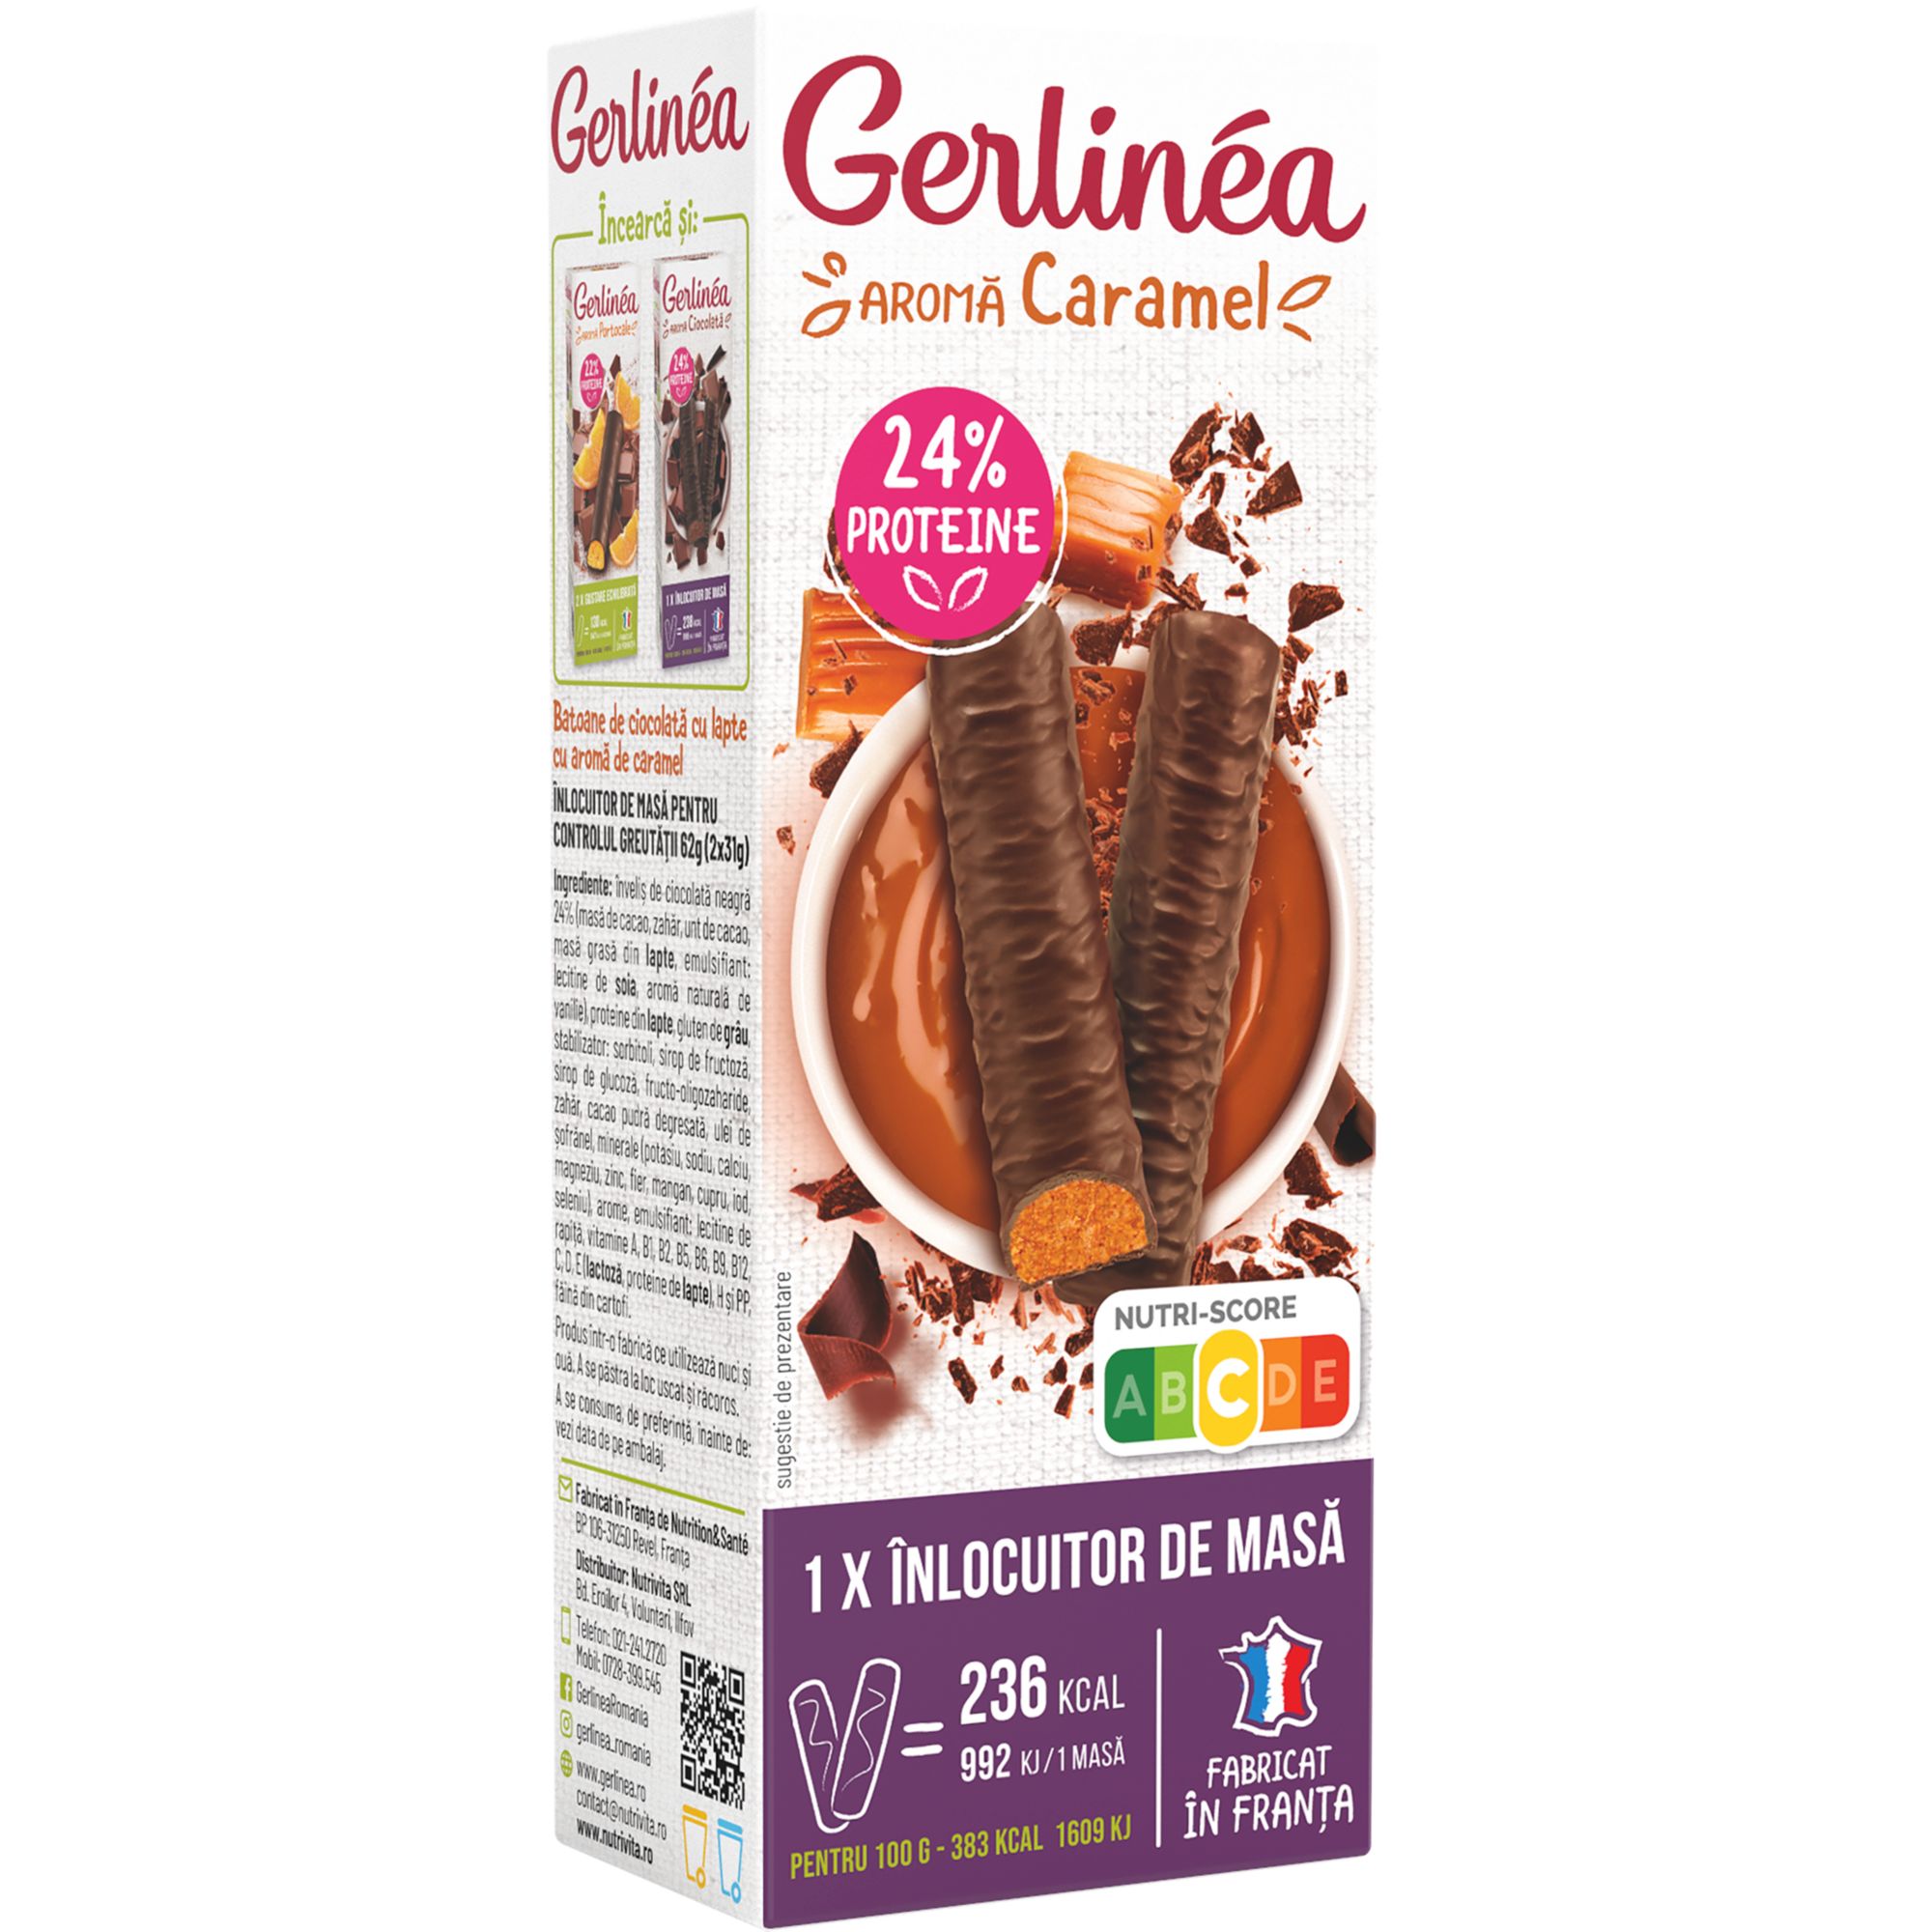 Bauturi & Energizante Caramel 62g Gerlinea La reduceri 6+2g